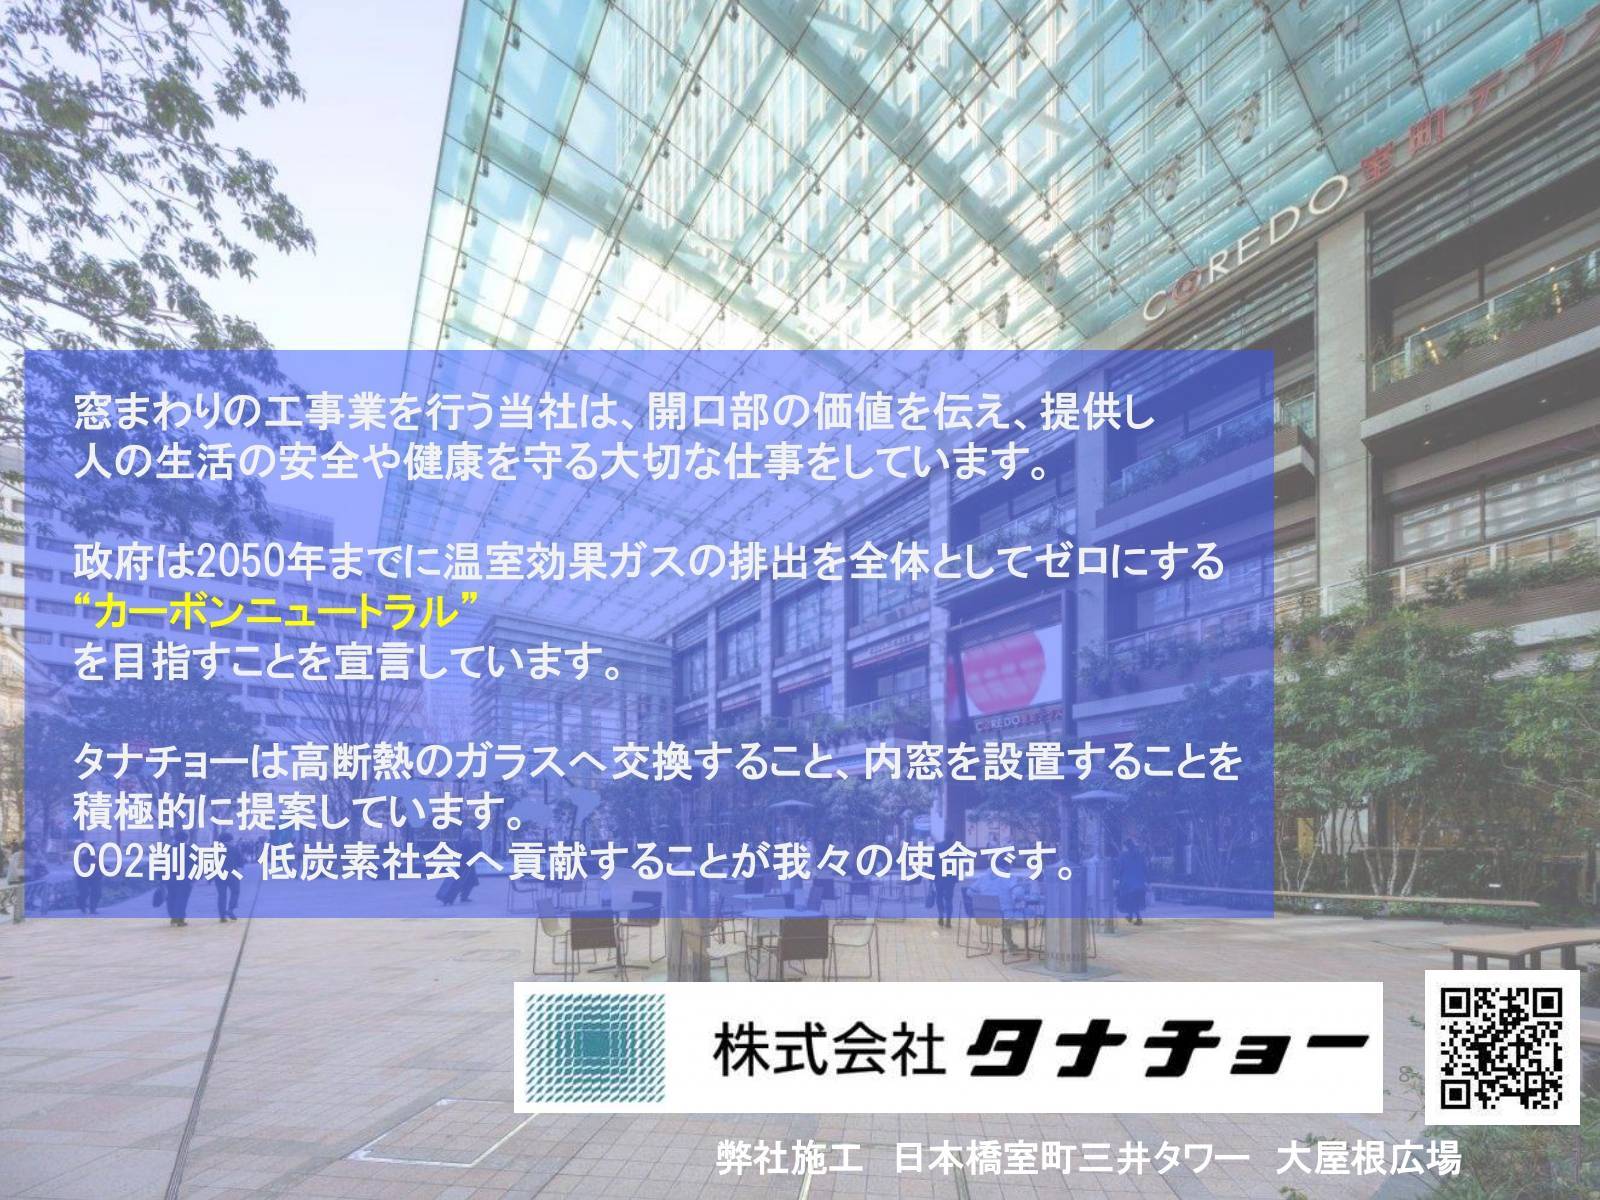 11月8日発表！窓断熱改修の補助金について タナチョー 東京のイベントキャンペーン 写真6